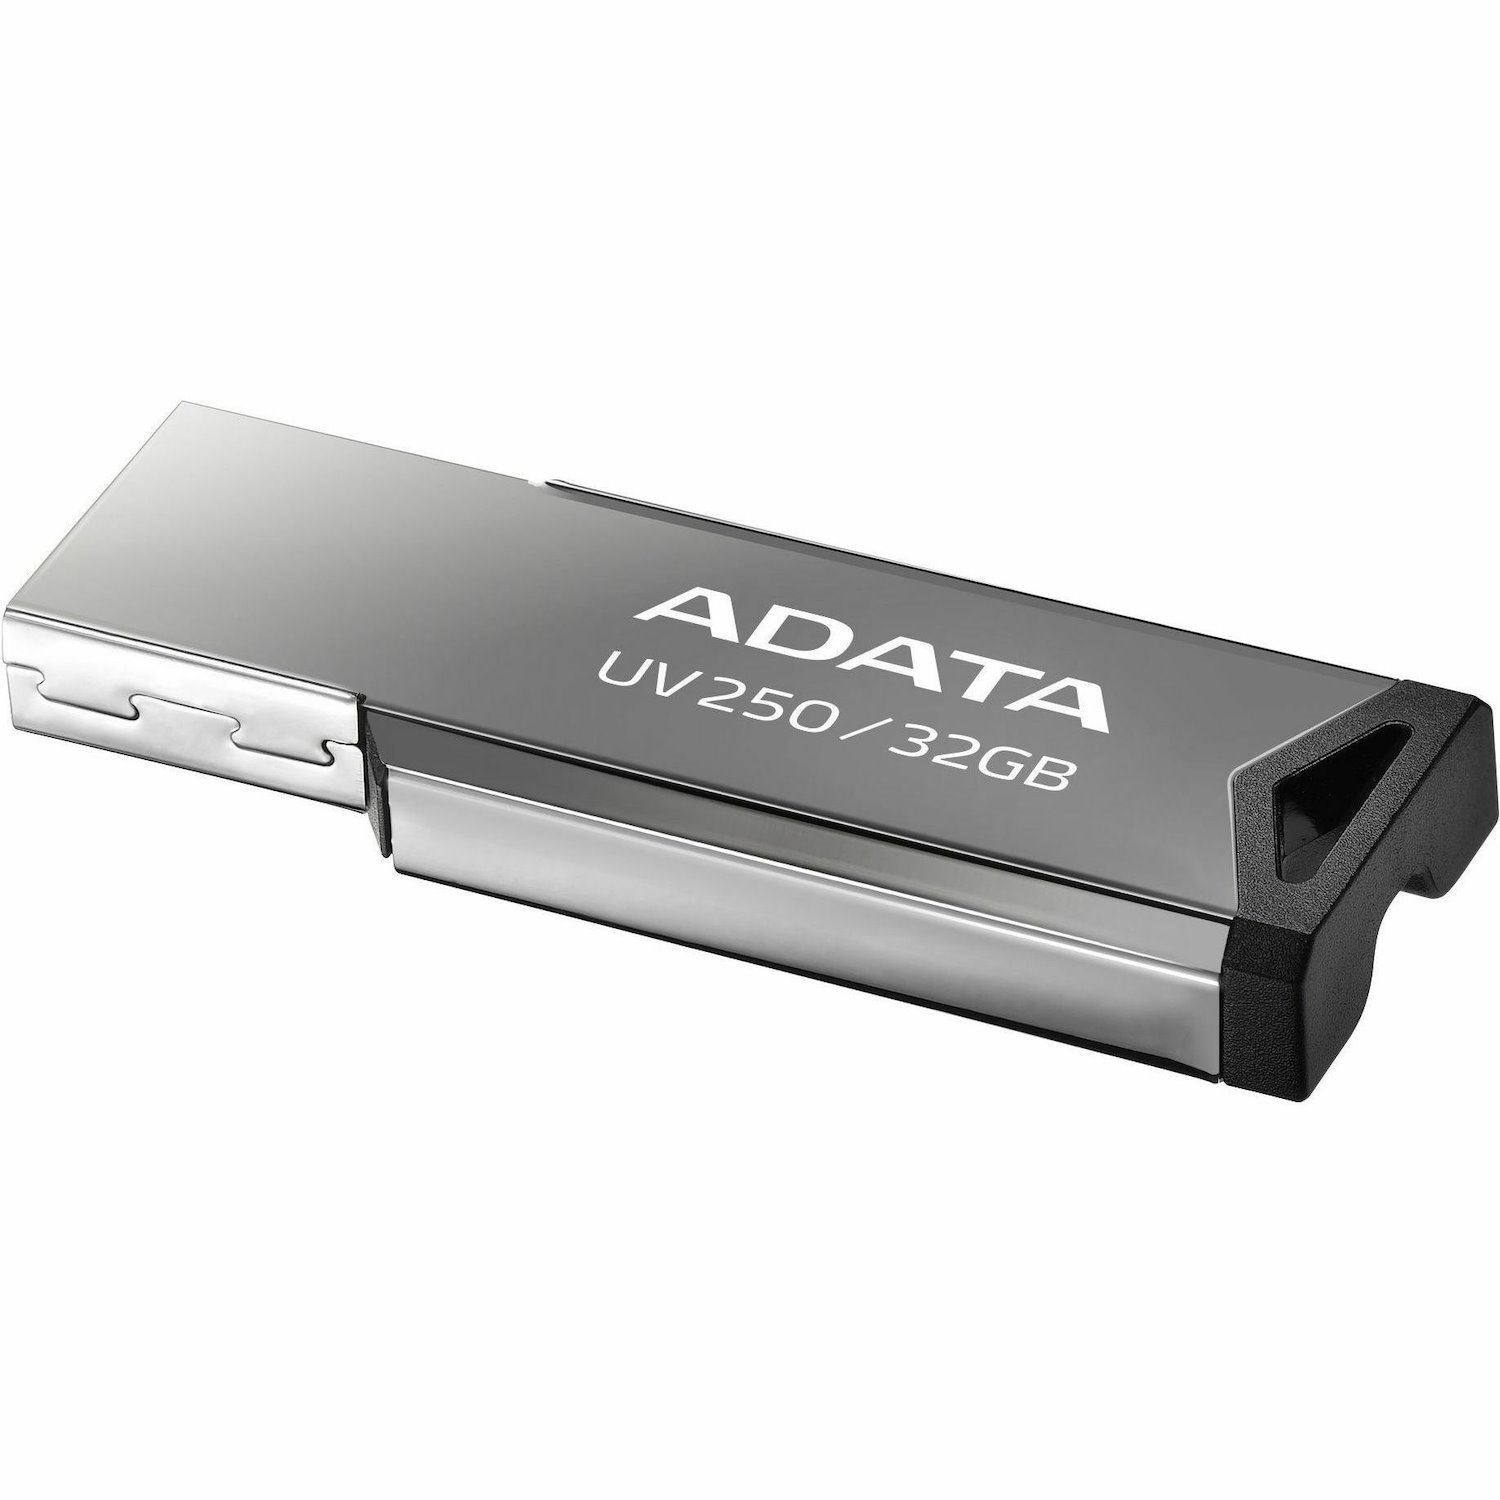 Adata Classic UV250 32GB USB 2.0 Flash Drive